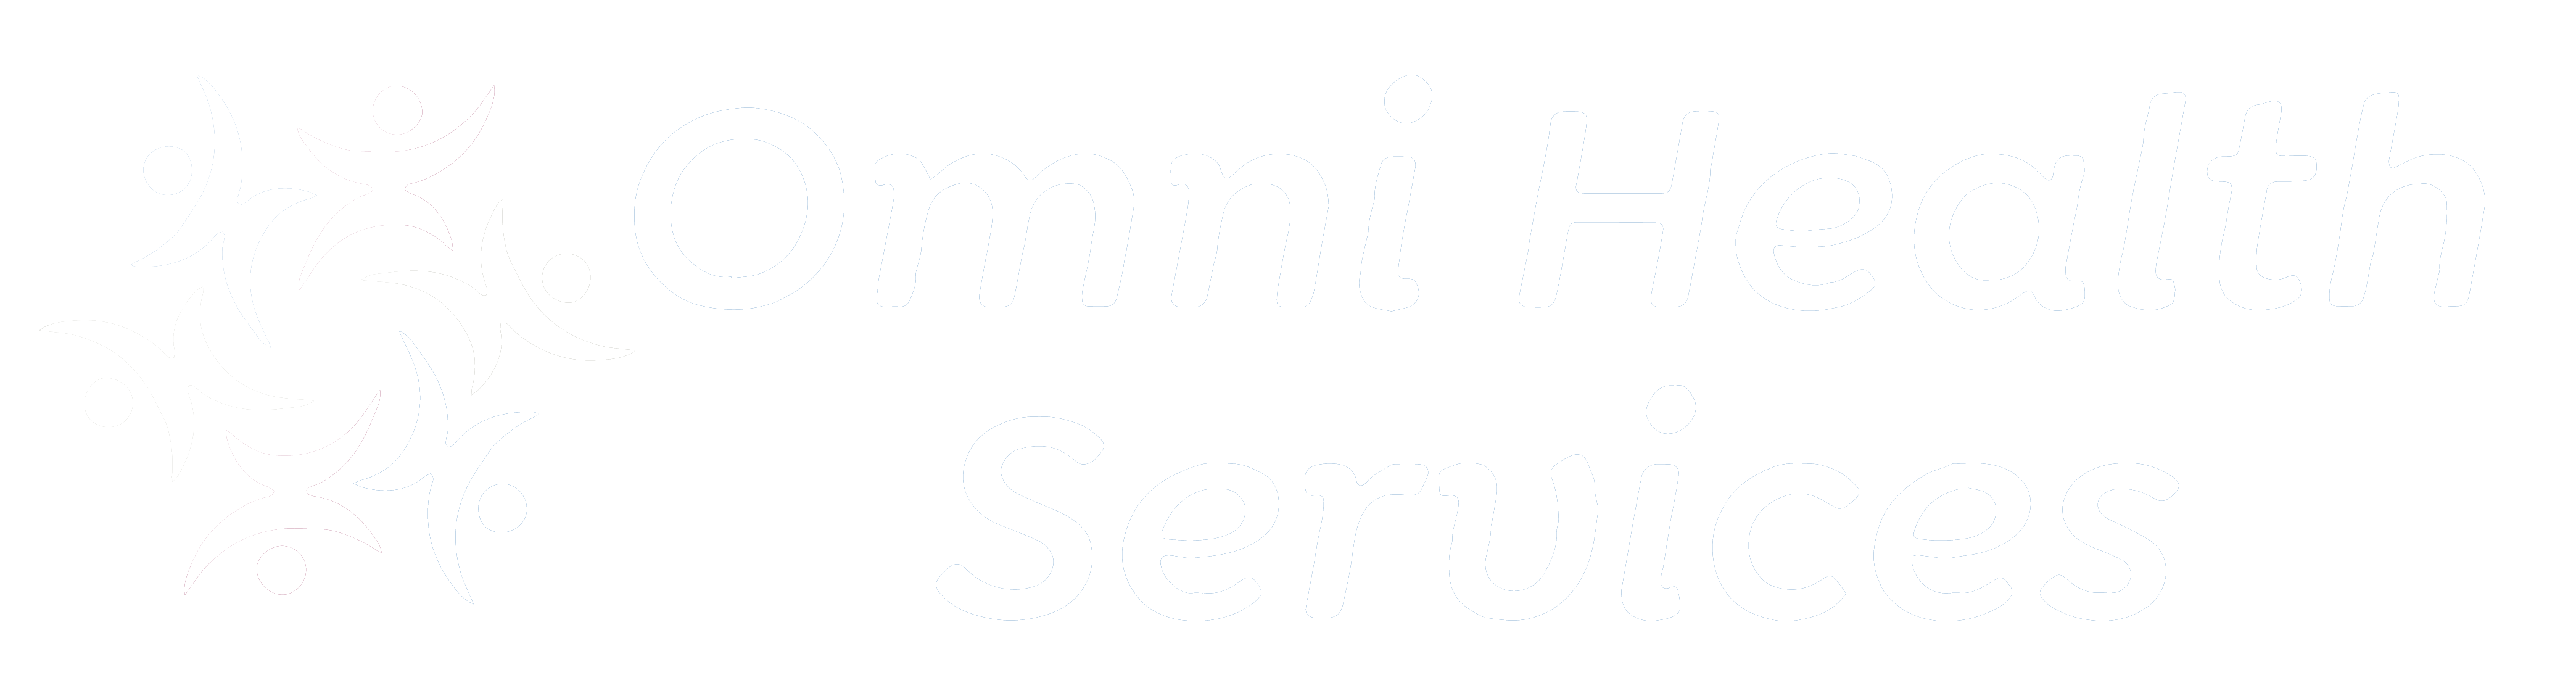 Omni Health Services